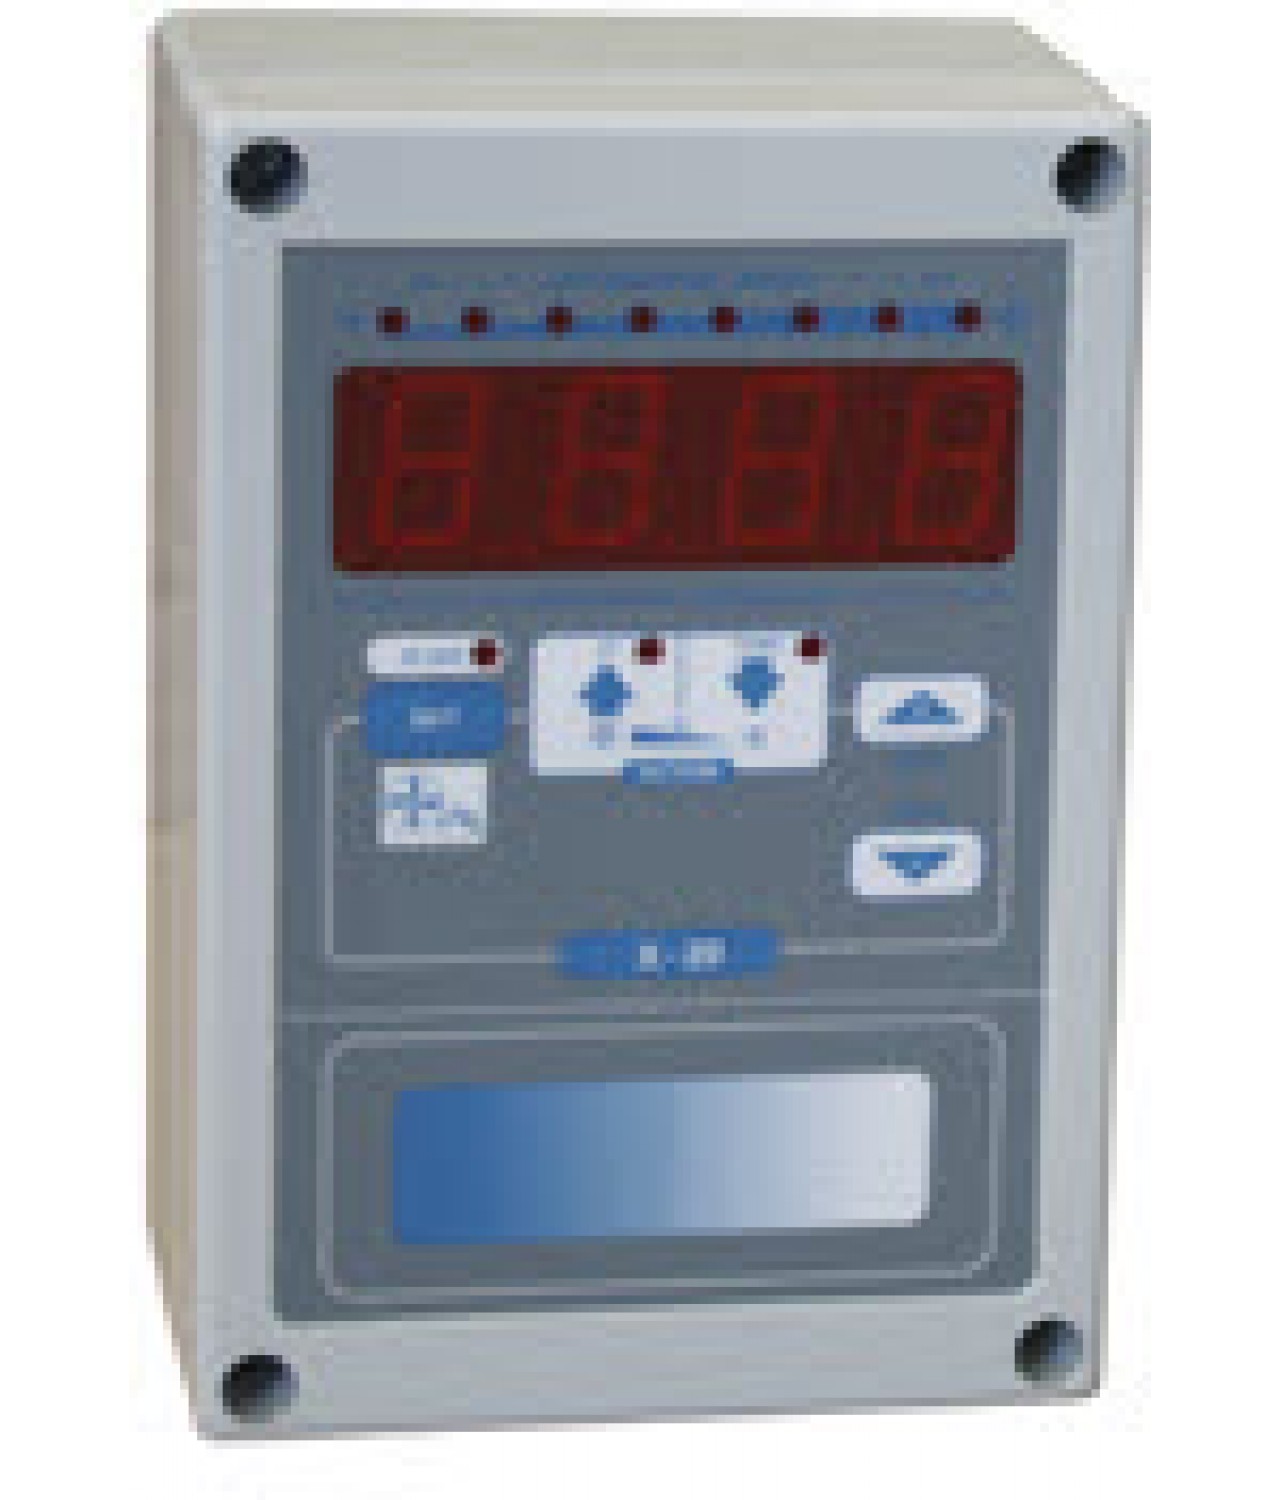 Control panel X20 - lubinių ventiliatorių SUPER POLAR HVLS greičio reguliatorius - užsakomas atskirai